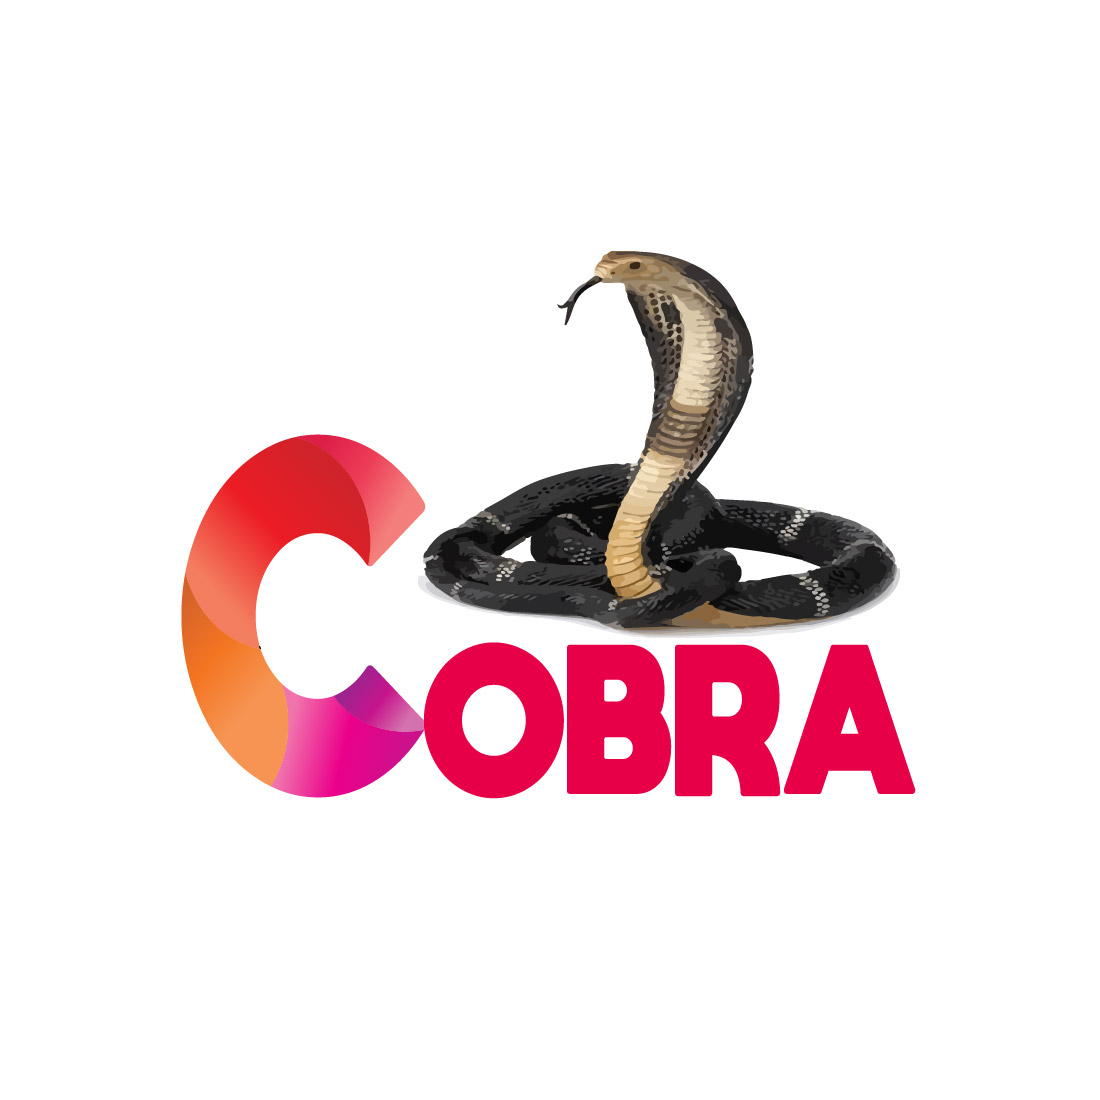 cobra cover image.